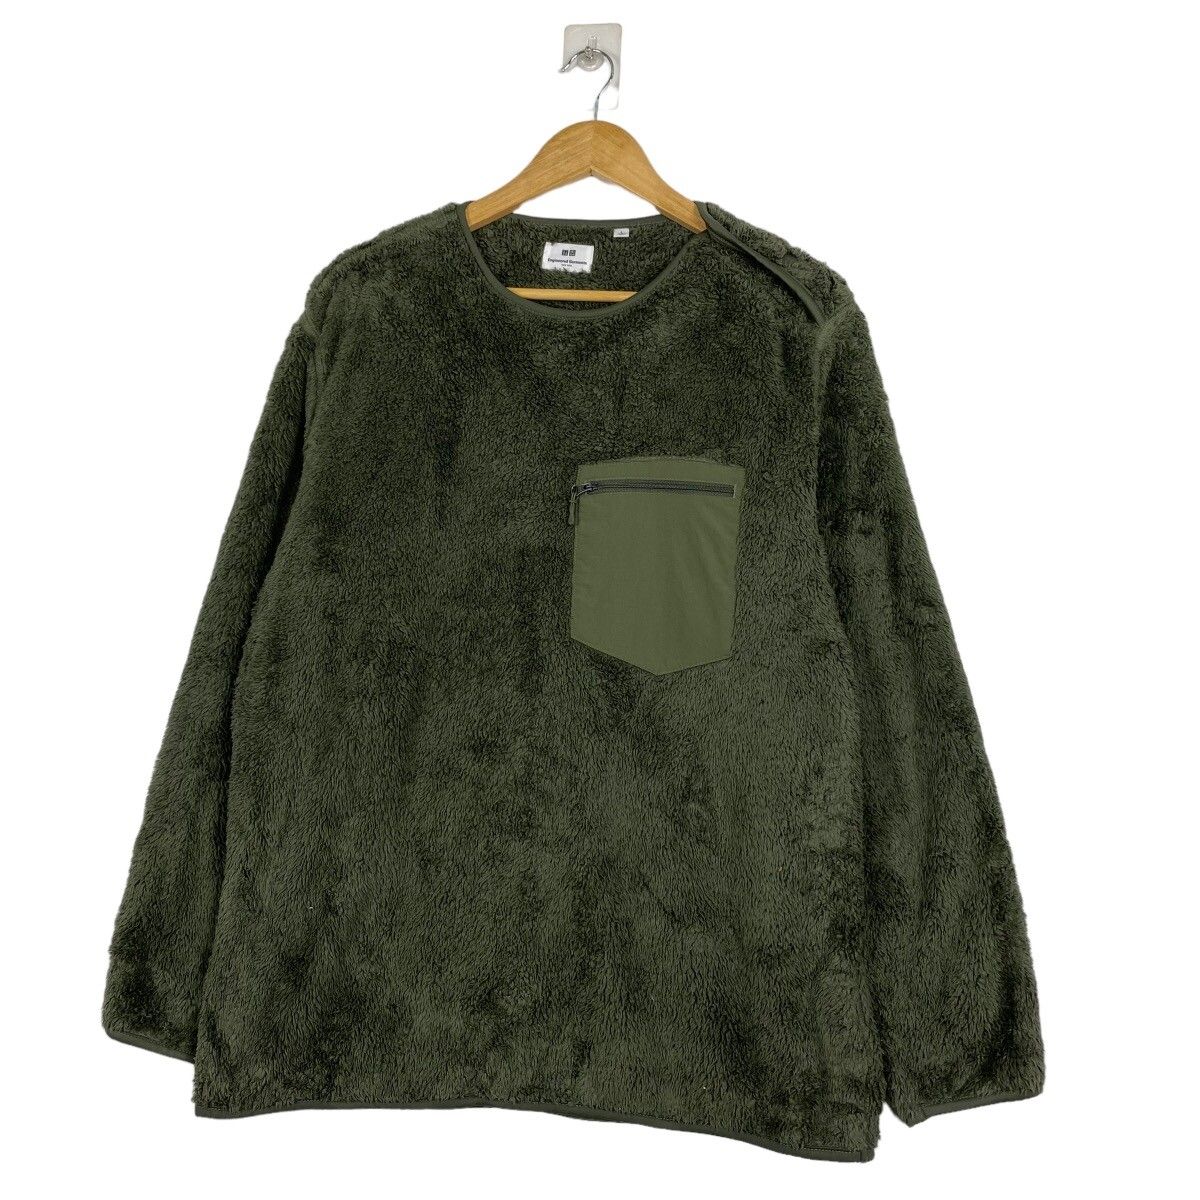 Uniqlo x Engineered Garments Fleece Sweater - 2